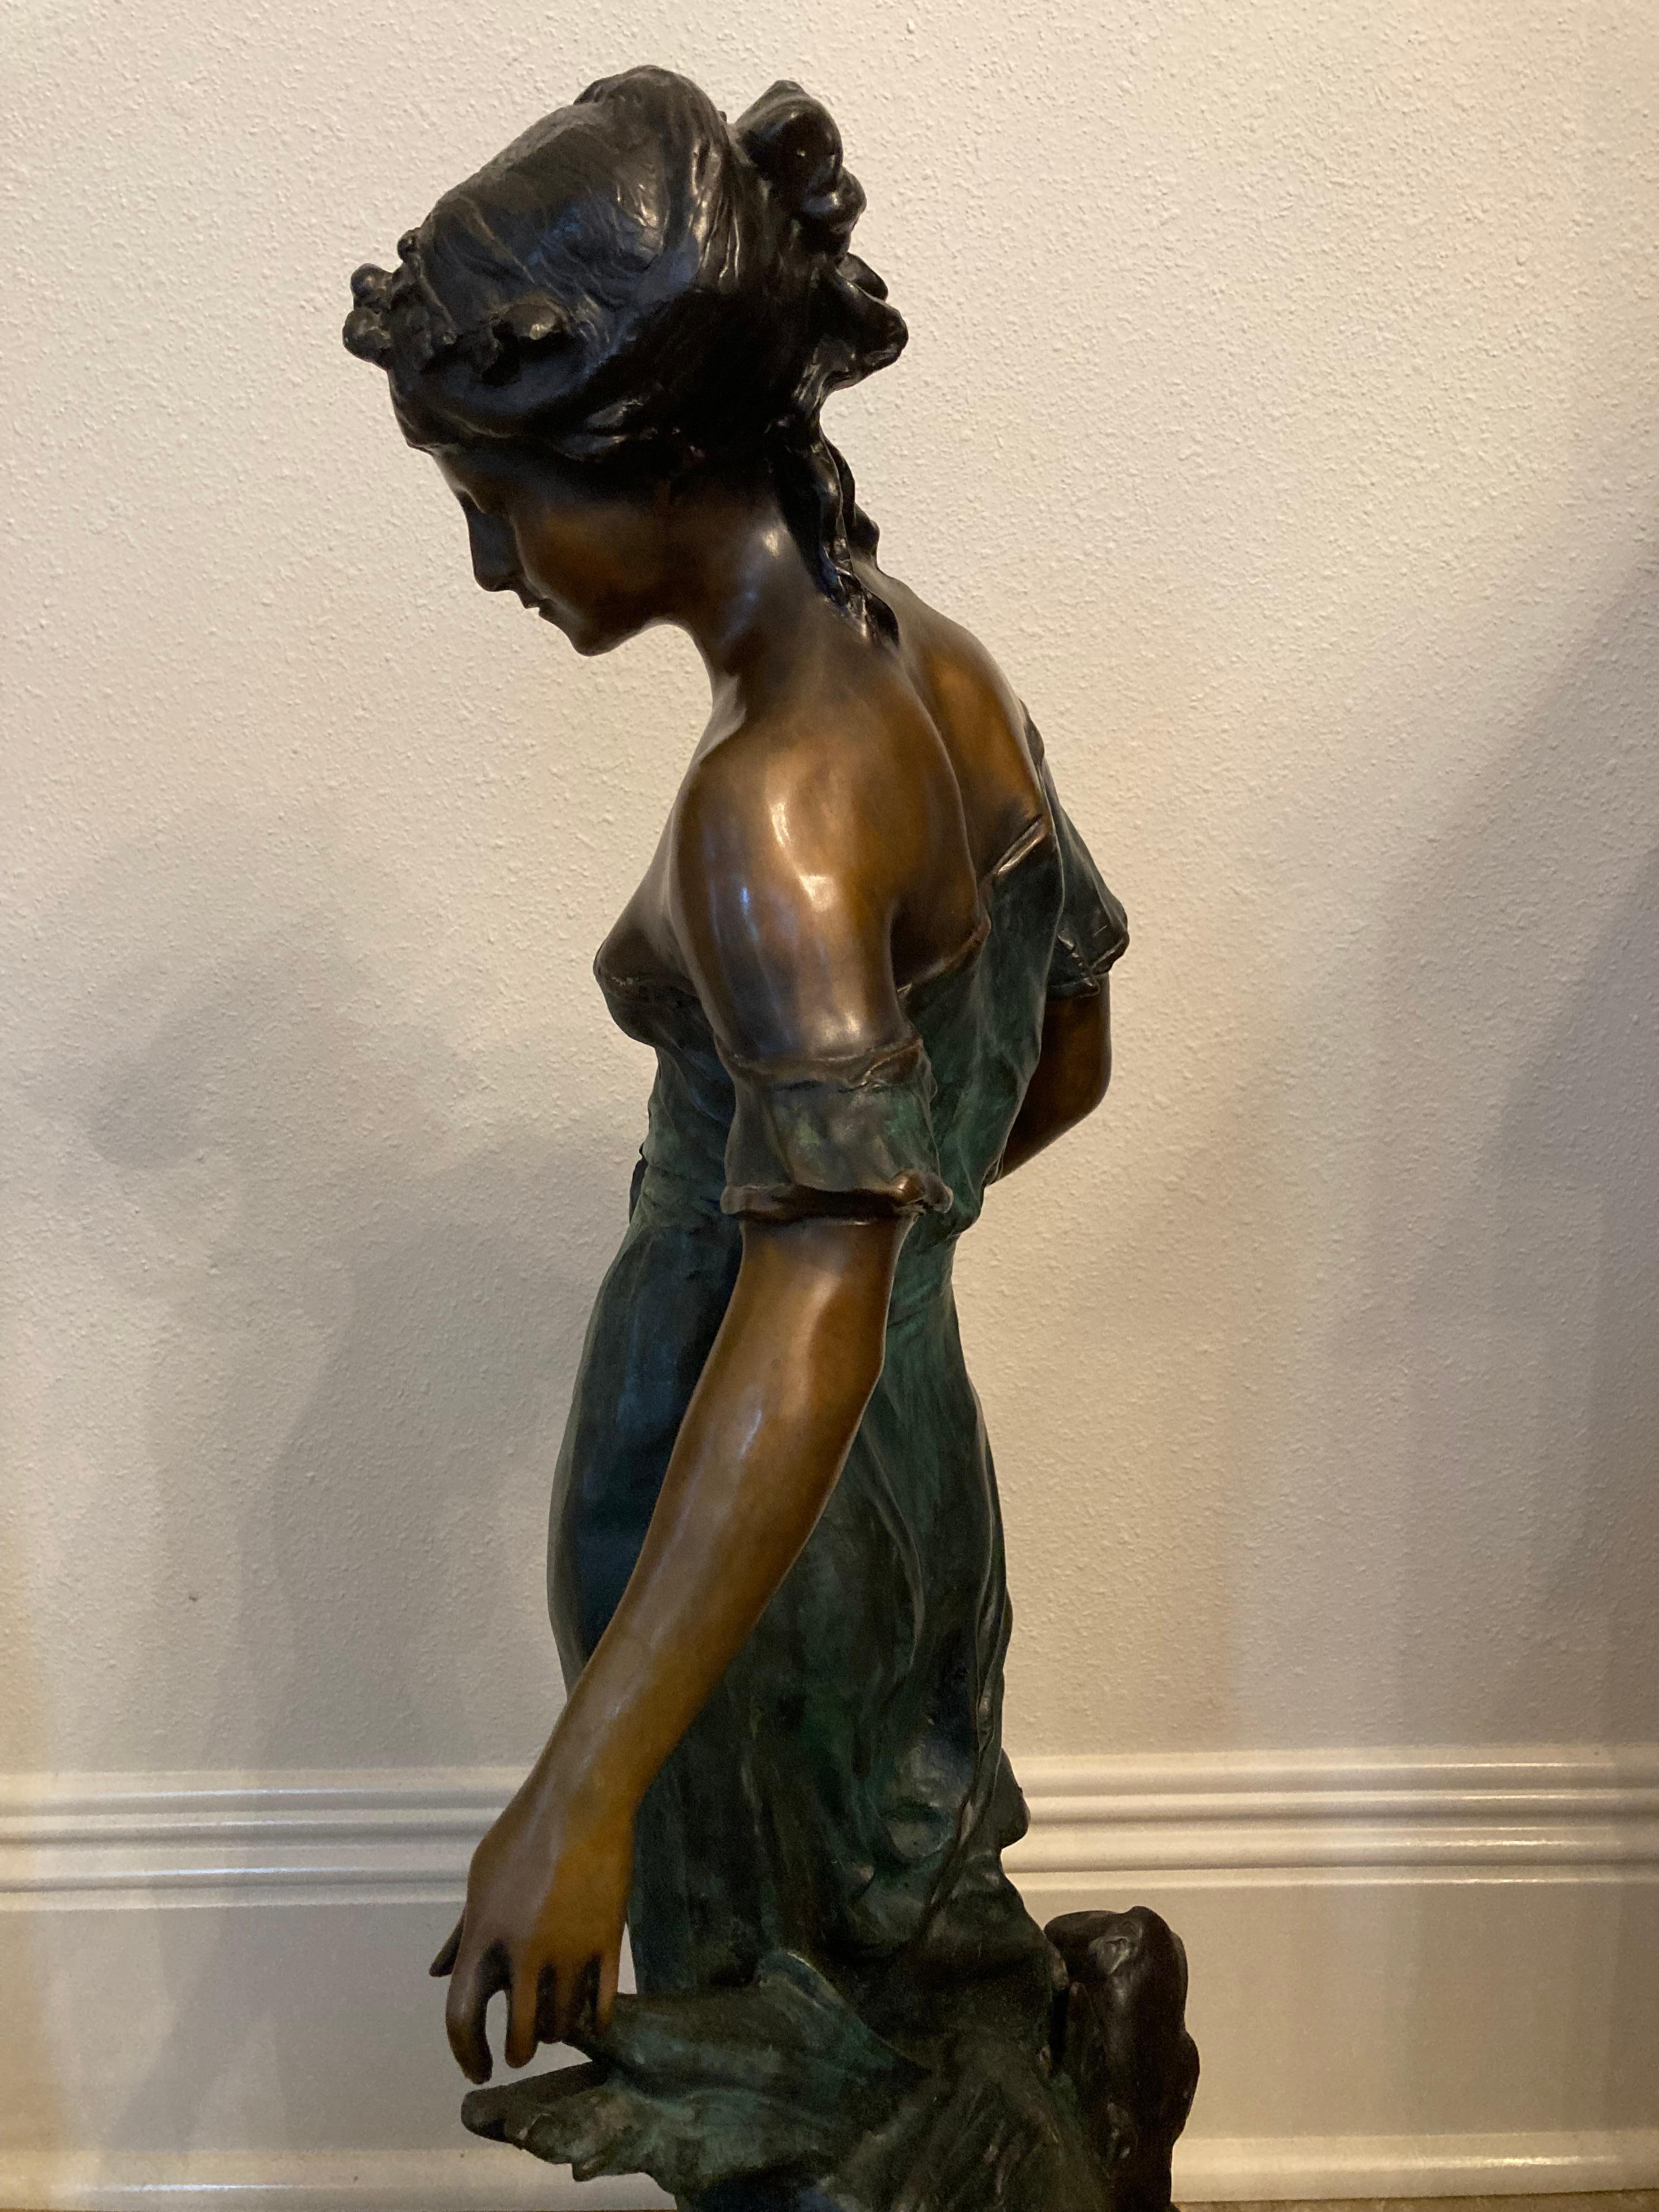 Eine exquisite Bronze des französischen Bildhauers Auguste Moreau, eines sehr angesehenen Künstlers, der zu Beginn des 20. Jahrhunderts regelmäßig in den Pariser Salons ausstellte. Er stellte oft Putten dar, aber seine wertvollsten Bronzen sind